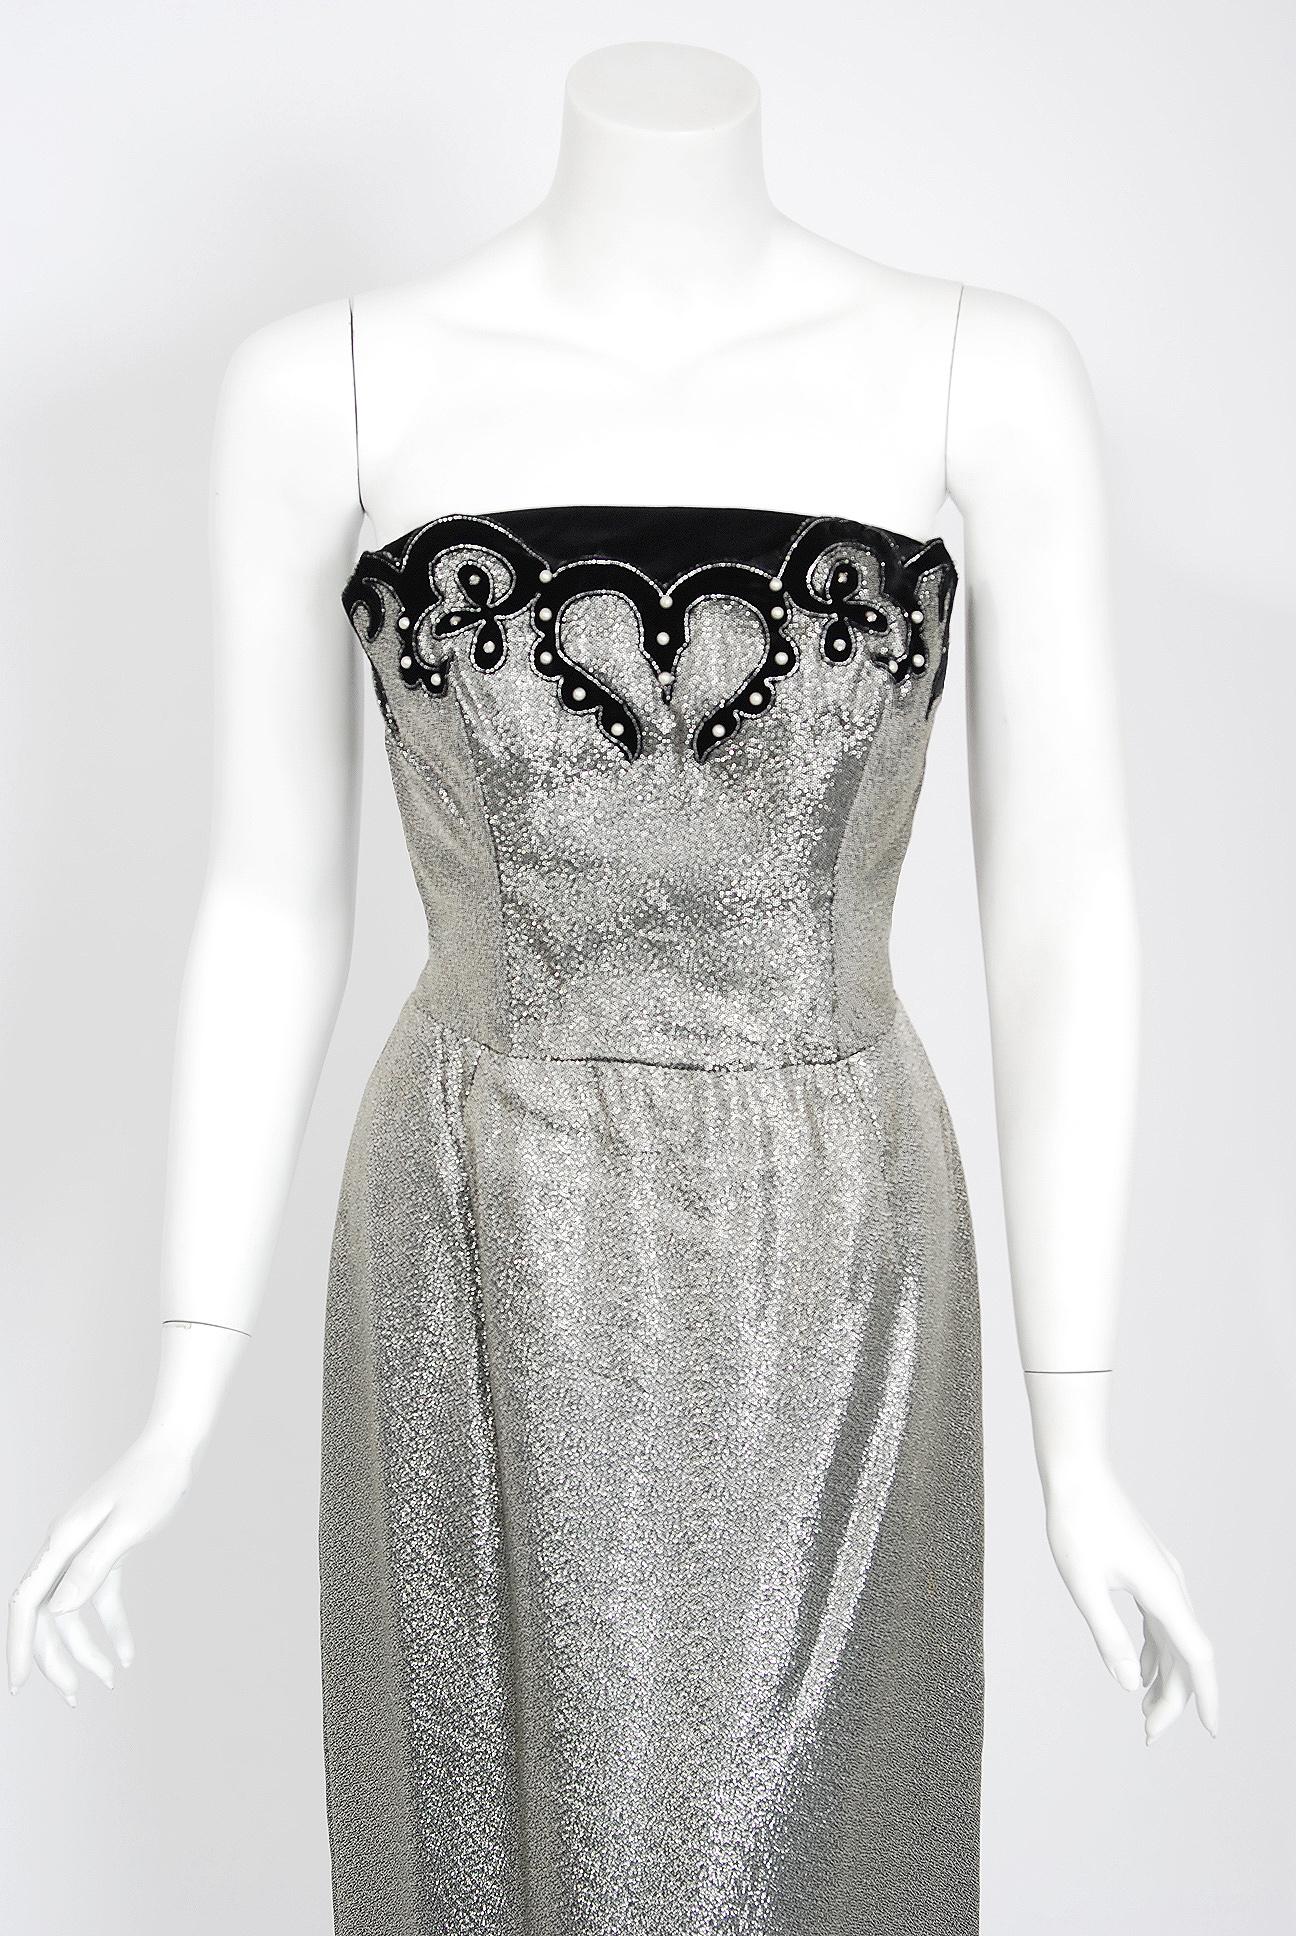 Ein verführerisches und hochgradig stilisiertes Kleid-Ensemble aus funkelndem Silberlamé aus den 1950er Jahren des berühmten Labels Lilli Diamond. Die Silhouette ist klassisch Pin-up 